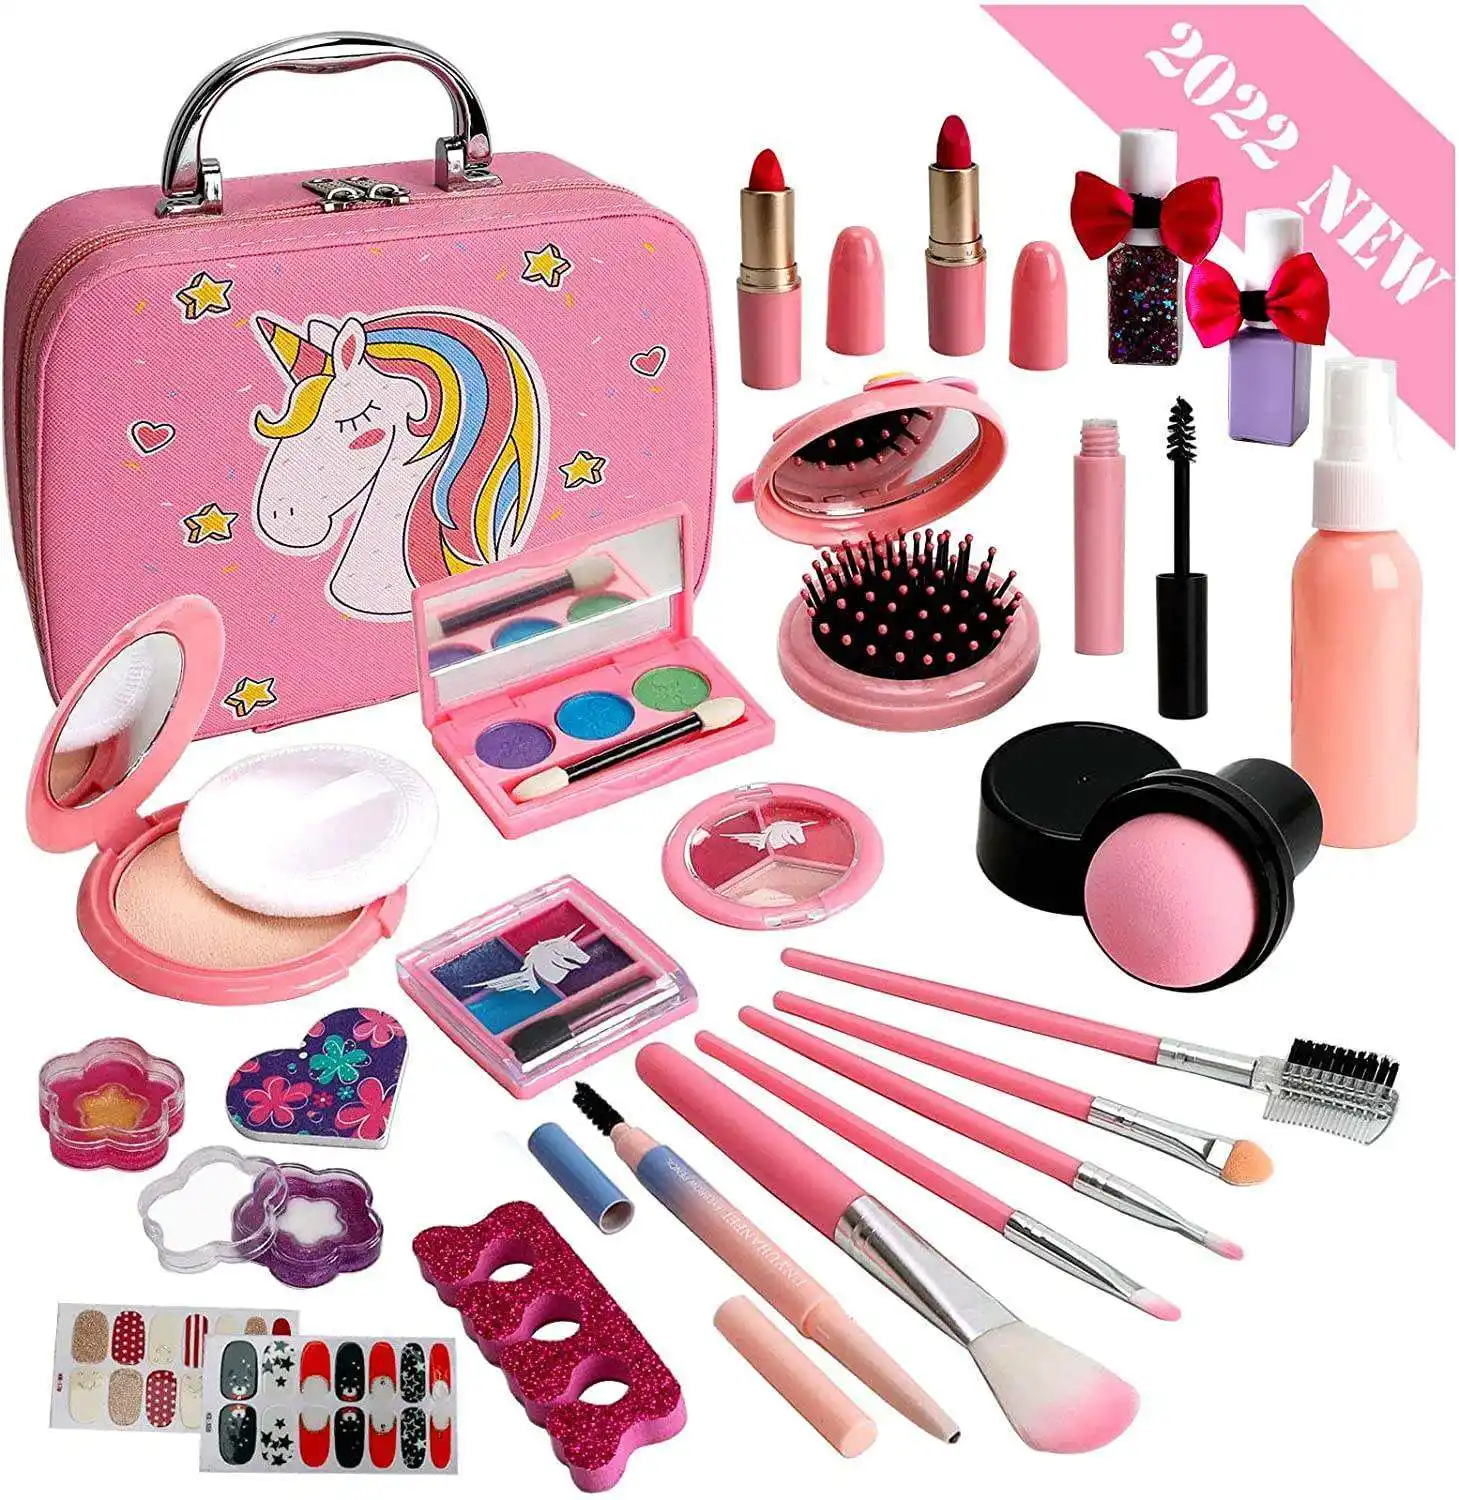 Scatola portatile unicorno kit trucco per bambini cosmetici set trucco per bambini per ragazze kit trucco giocattoli per ragazze